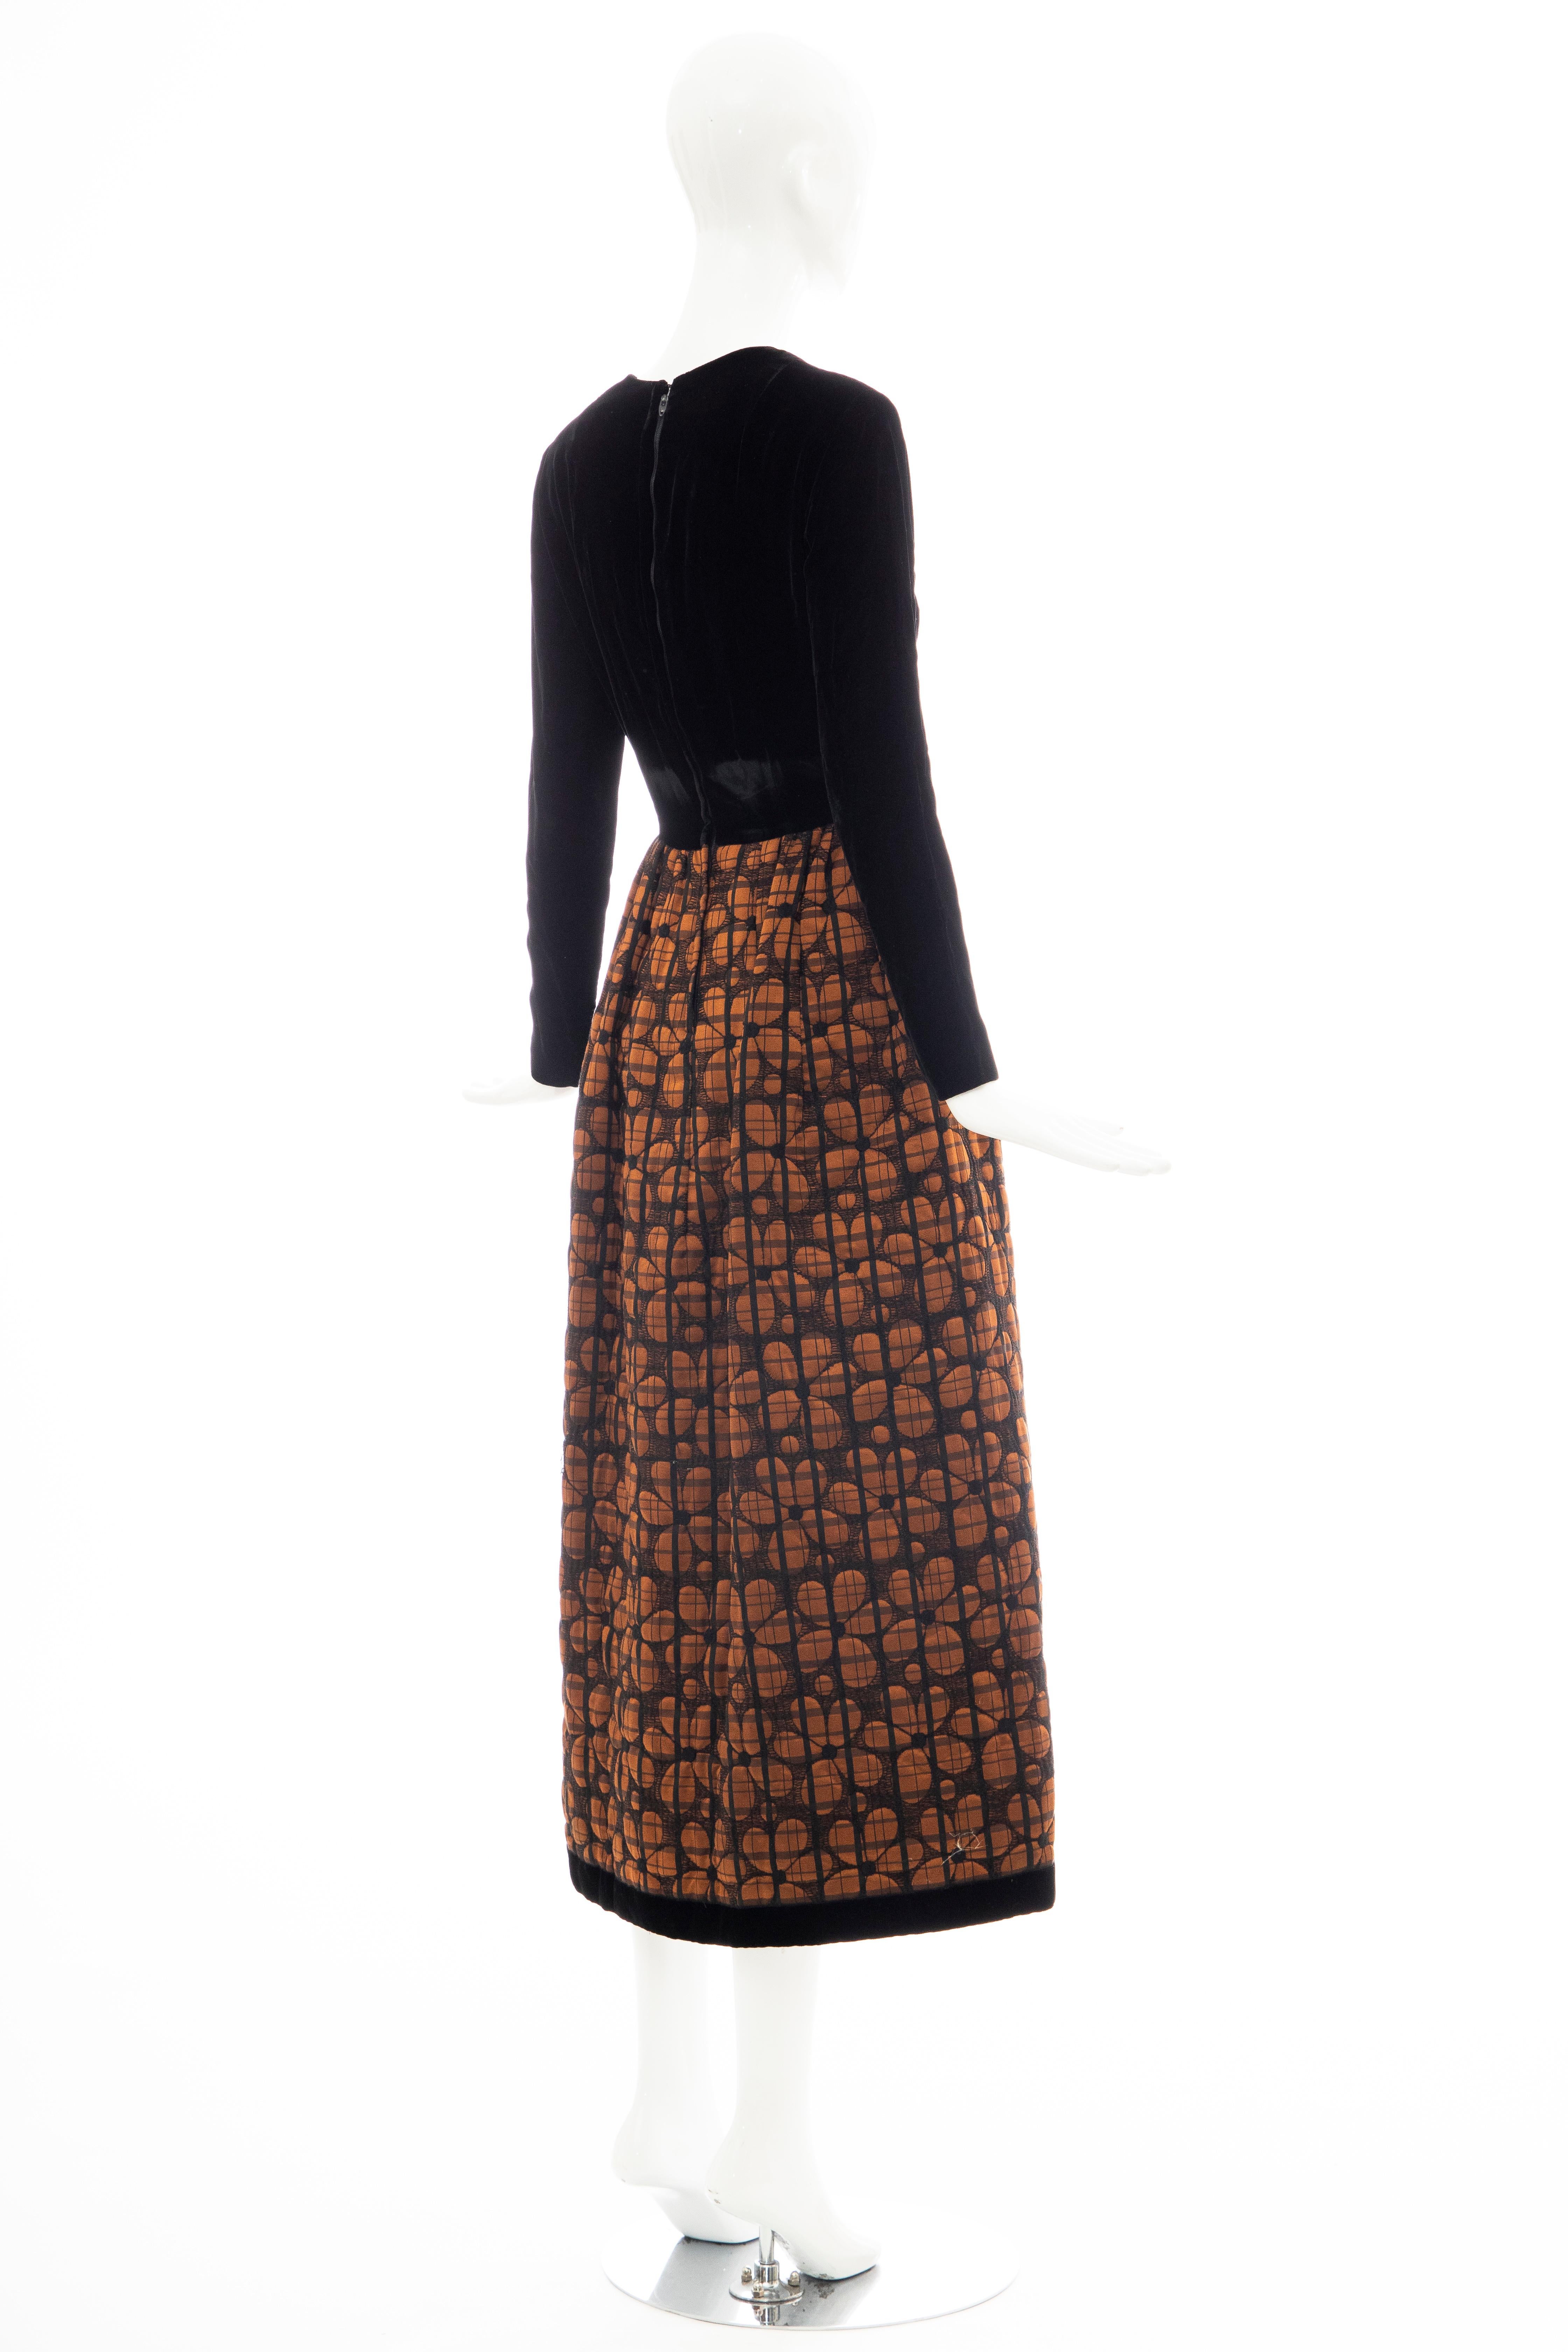 Lillie Rubin Black Silk Velvet Copper Quilted Skirt Evening Dress, Circa: 1970's 2